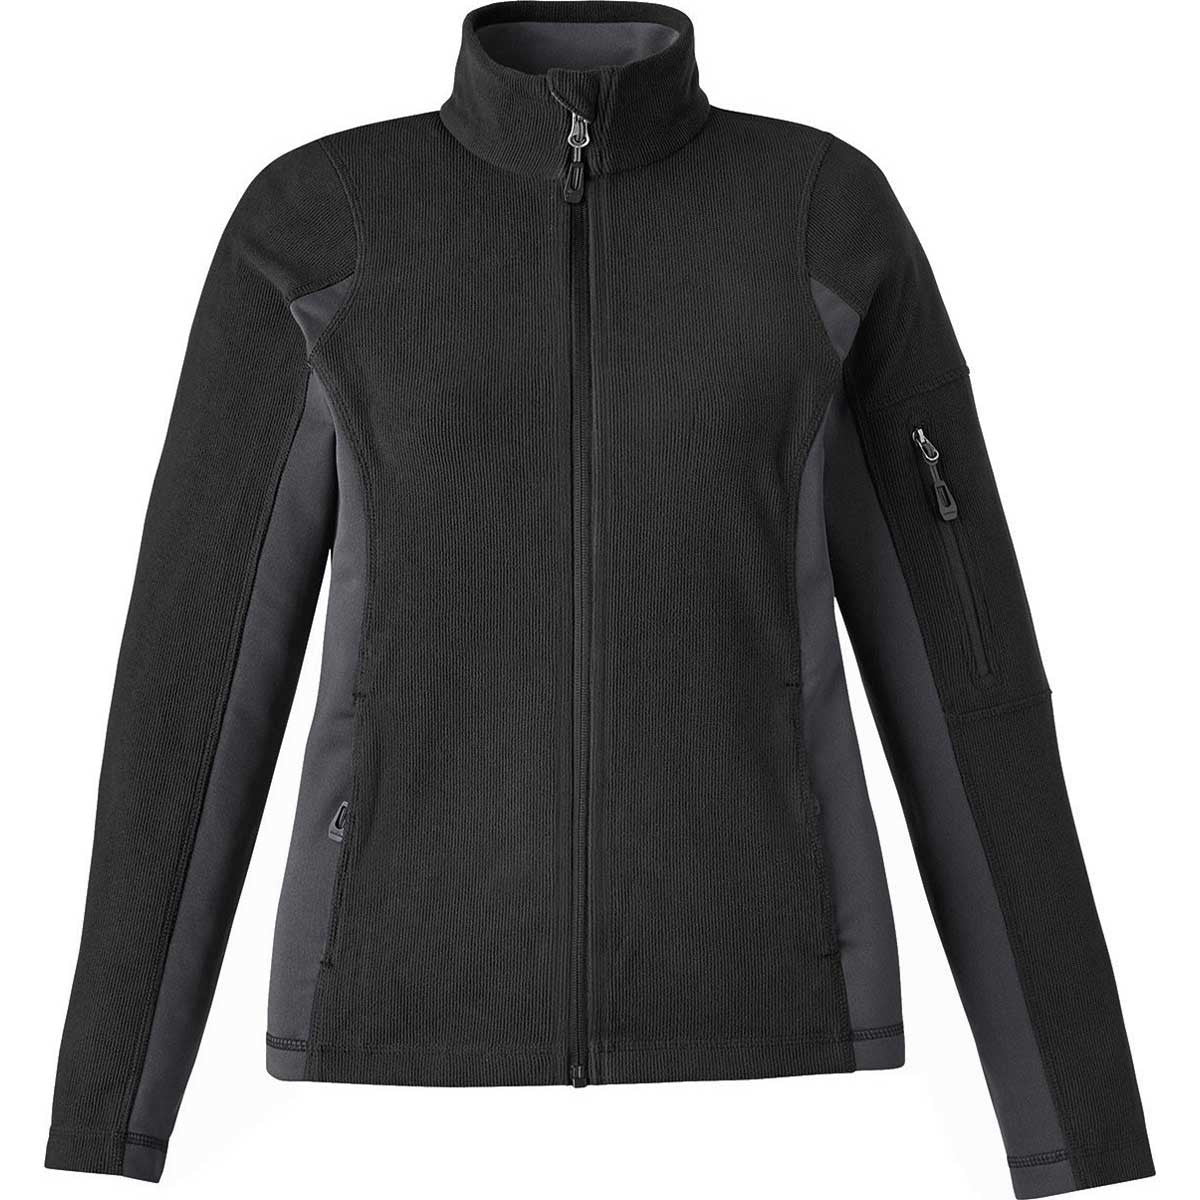 North End Women's Black Generate Textured Fleece Jacket